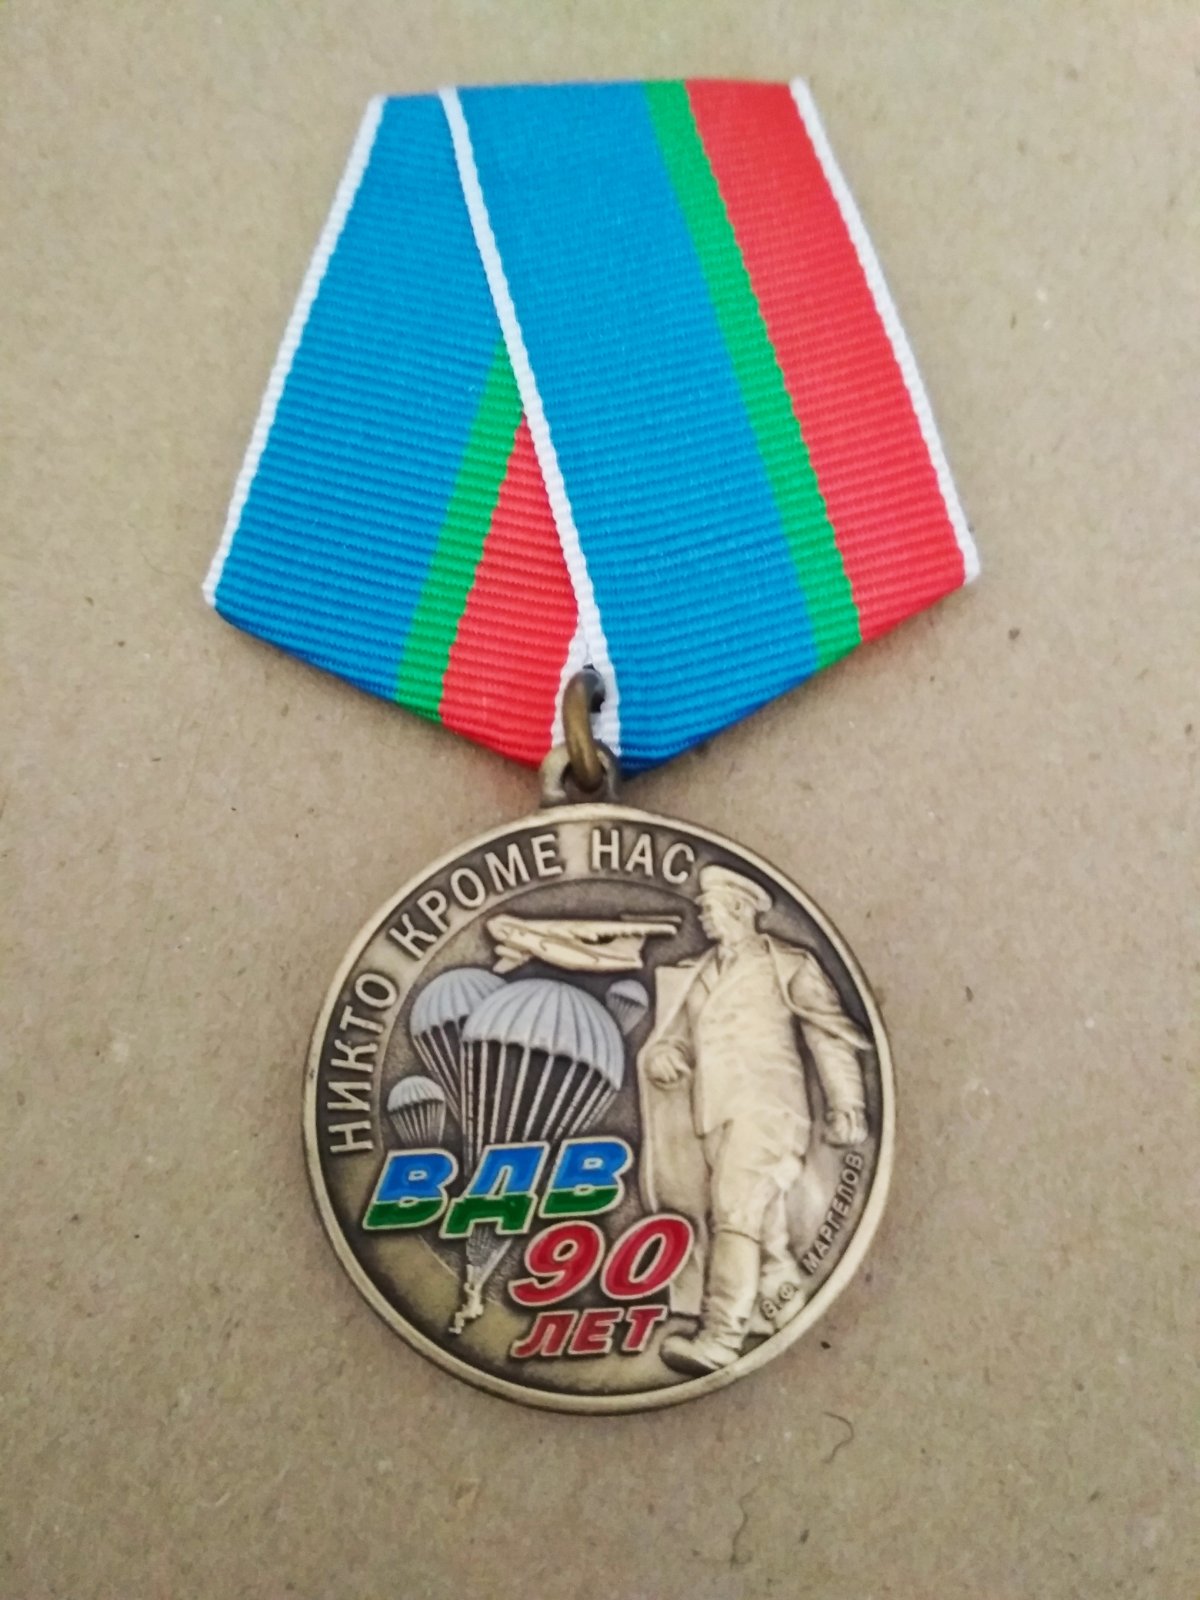 Медаль "90 лет ВДВ". Изображение Маргелова В.Ф. в полный рост, ИЛ-76 и купола парашютов.